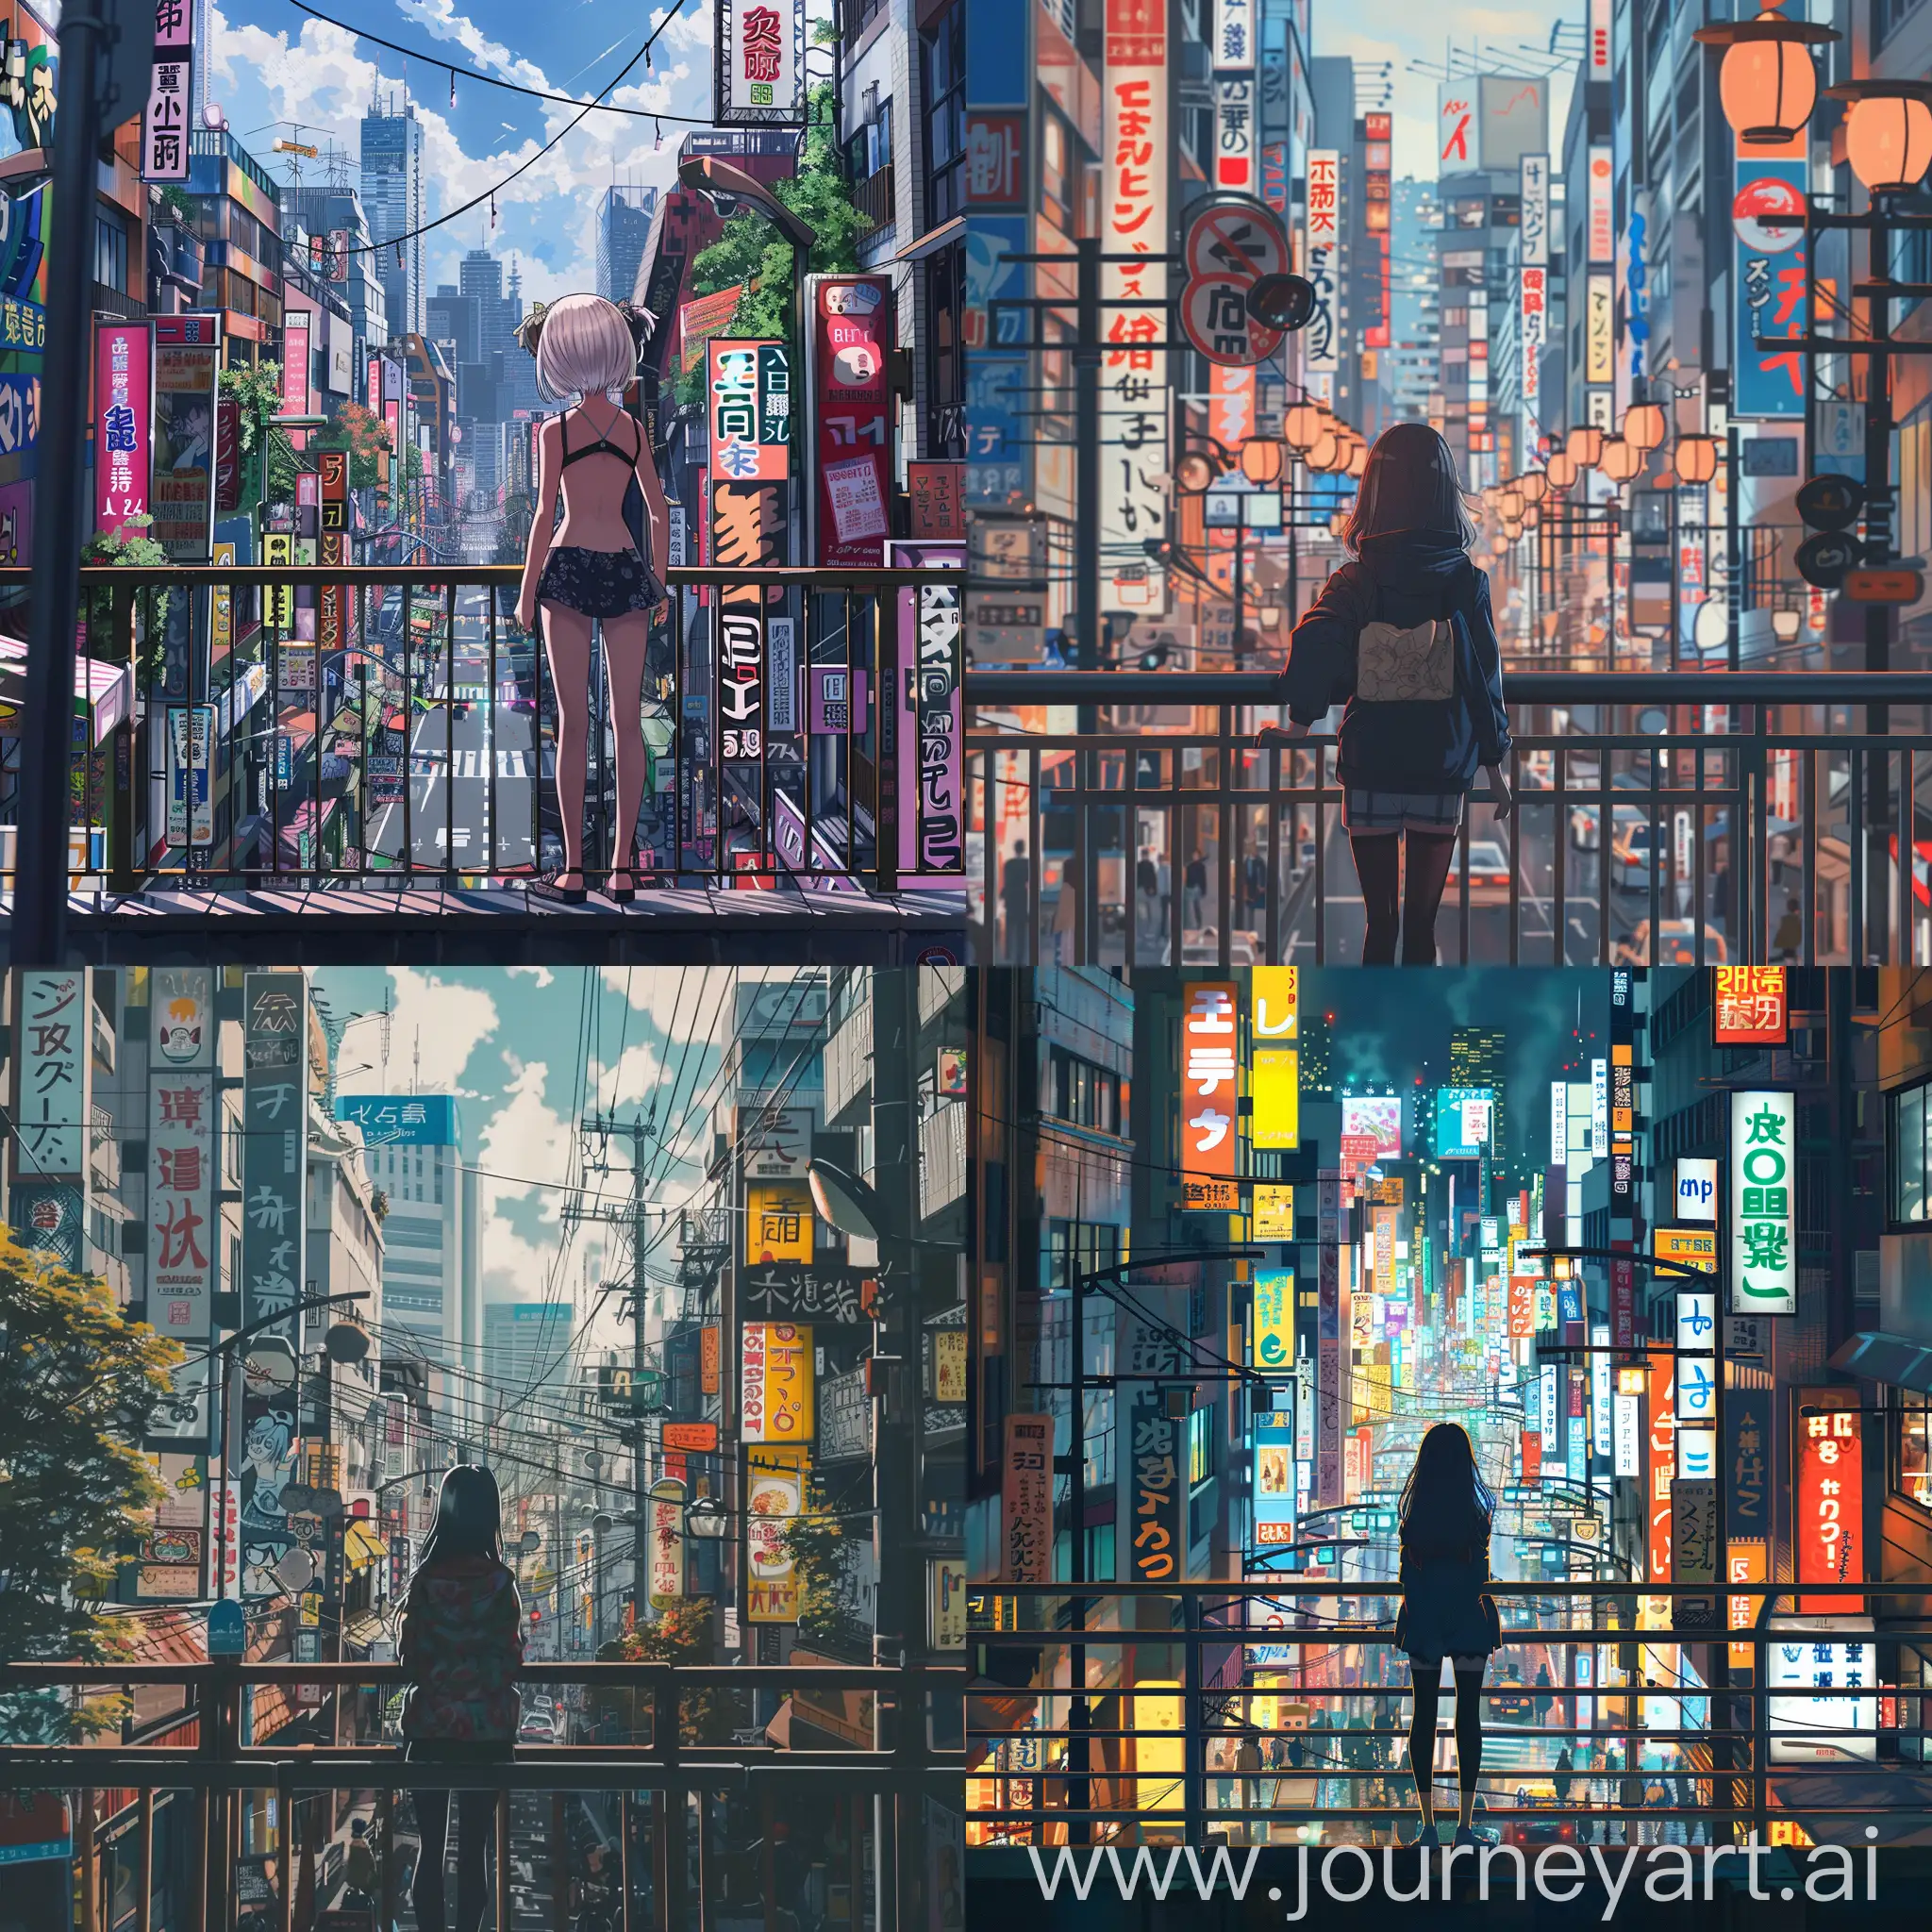 токийские красивые улицы с вывесками, аниме девочка стоит у перил и наблюдает за красотой города